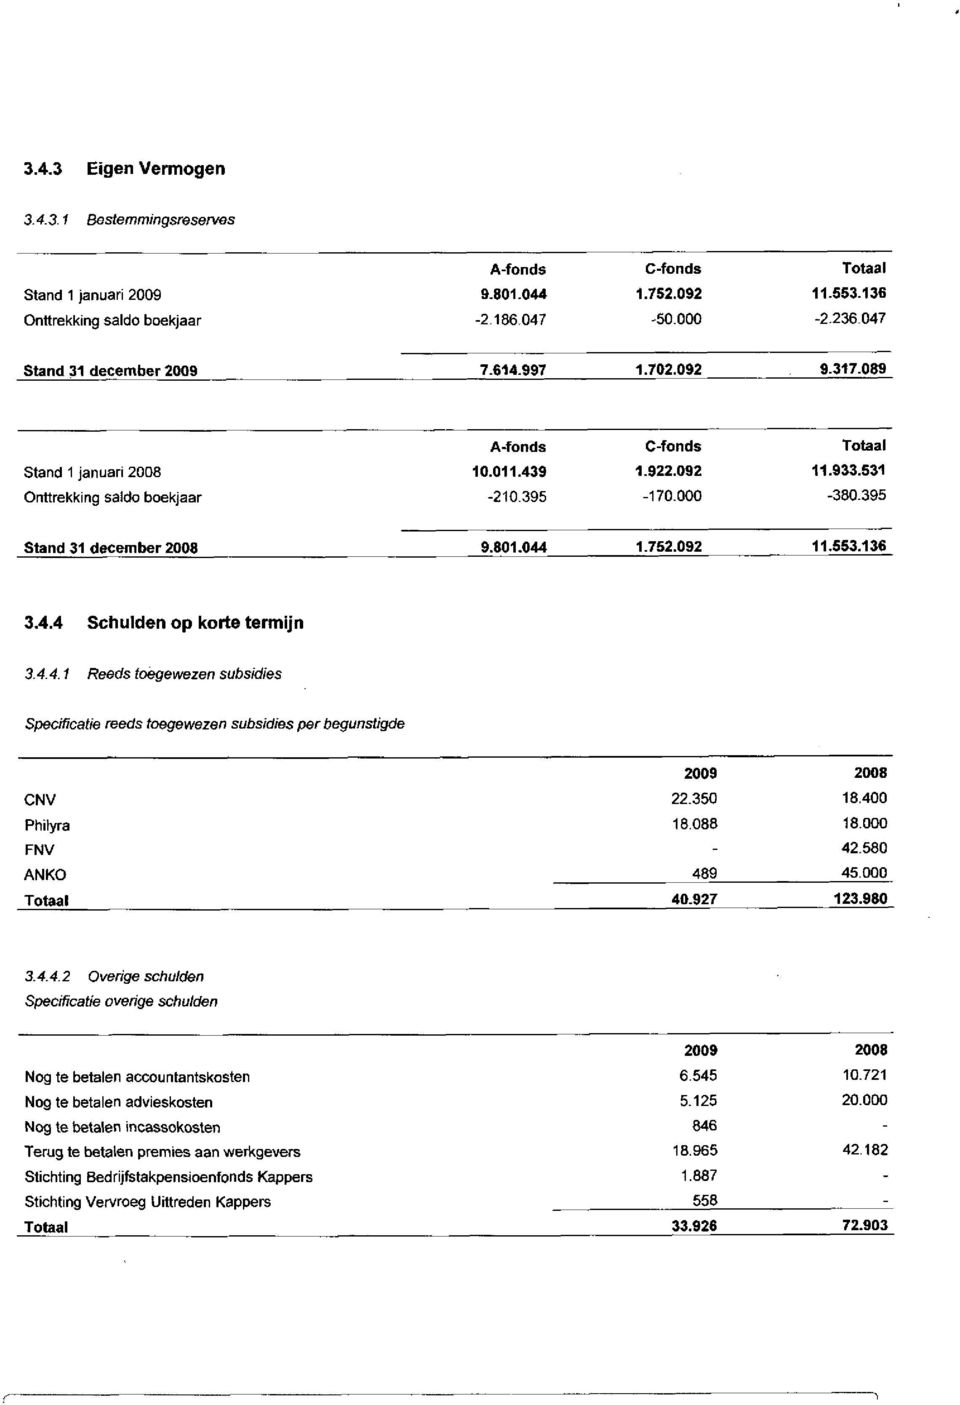 4.4 Schulden op korte termijn 3.4.4.1 Reeds toegewezen subsidies Specificatie reeds toegewezen subsidies per begunstigde 2009 2008 CNV Philyra FNV NKO 22.350 18.088-489 40.927 18.400 18.000 42.580 45.